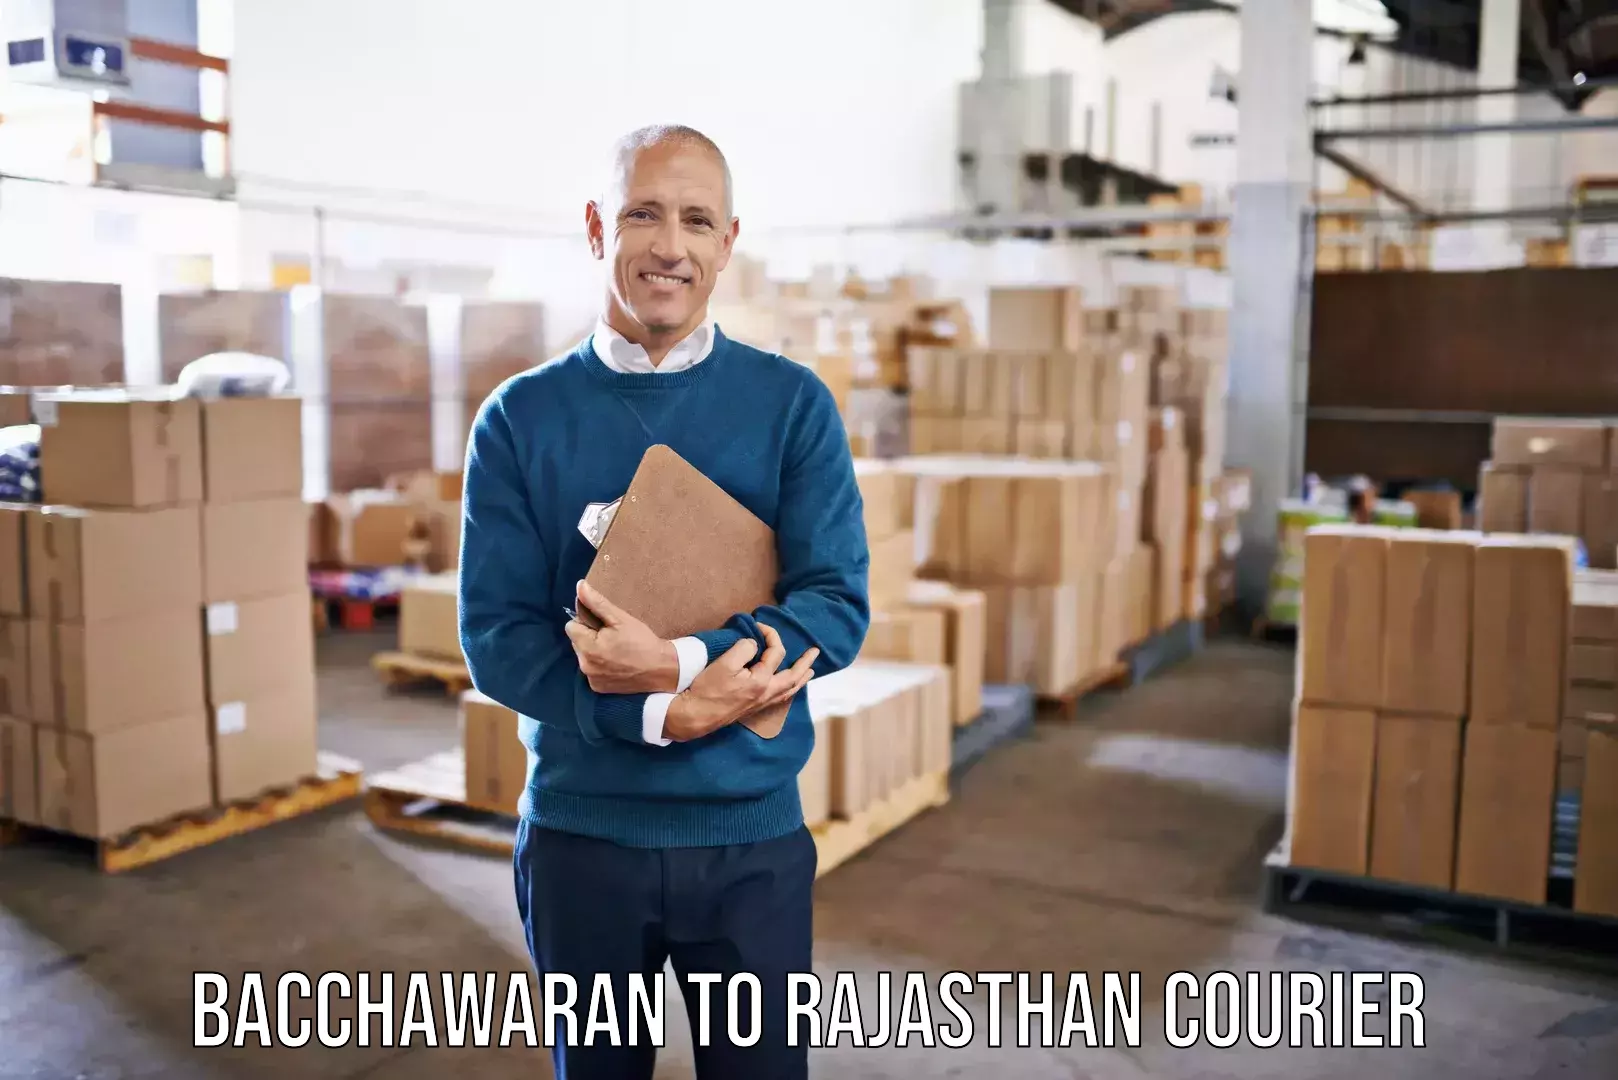 Furniture transport service Bacchawaran to Rajasthan